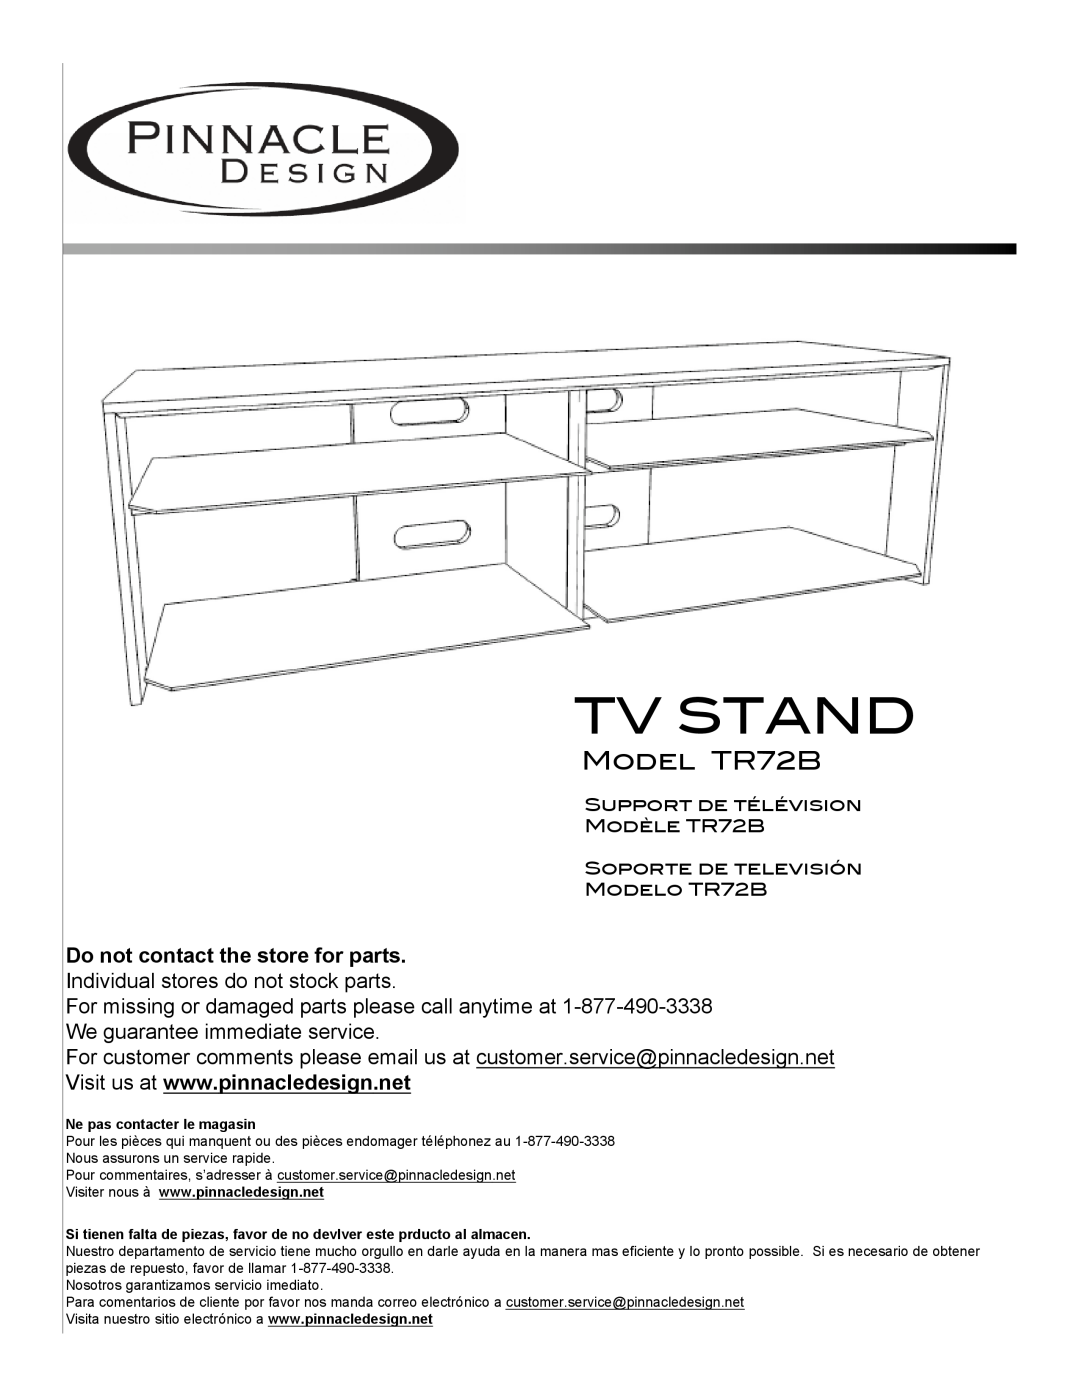 Pinnacle Design manual Model TR72B, Tv Stand 